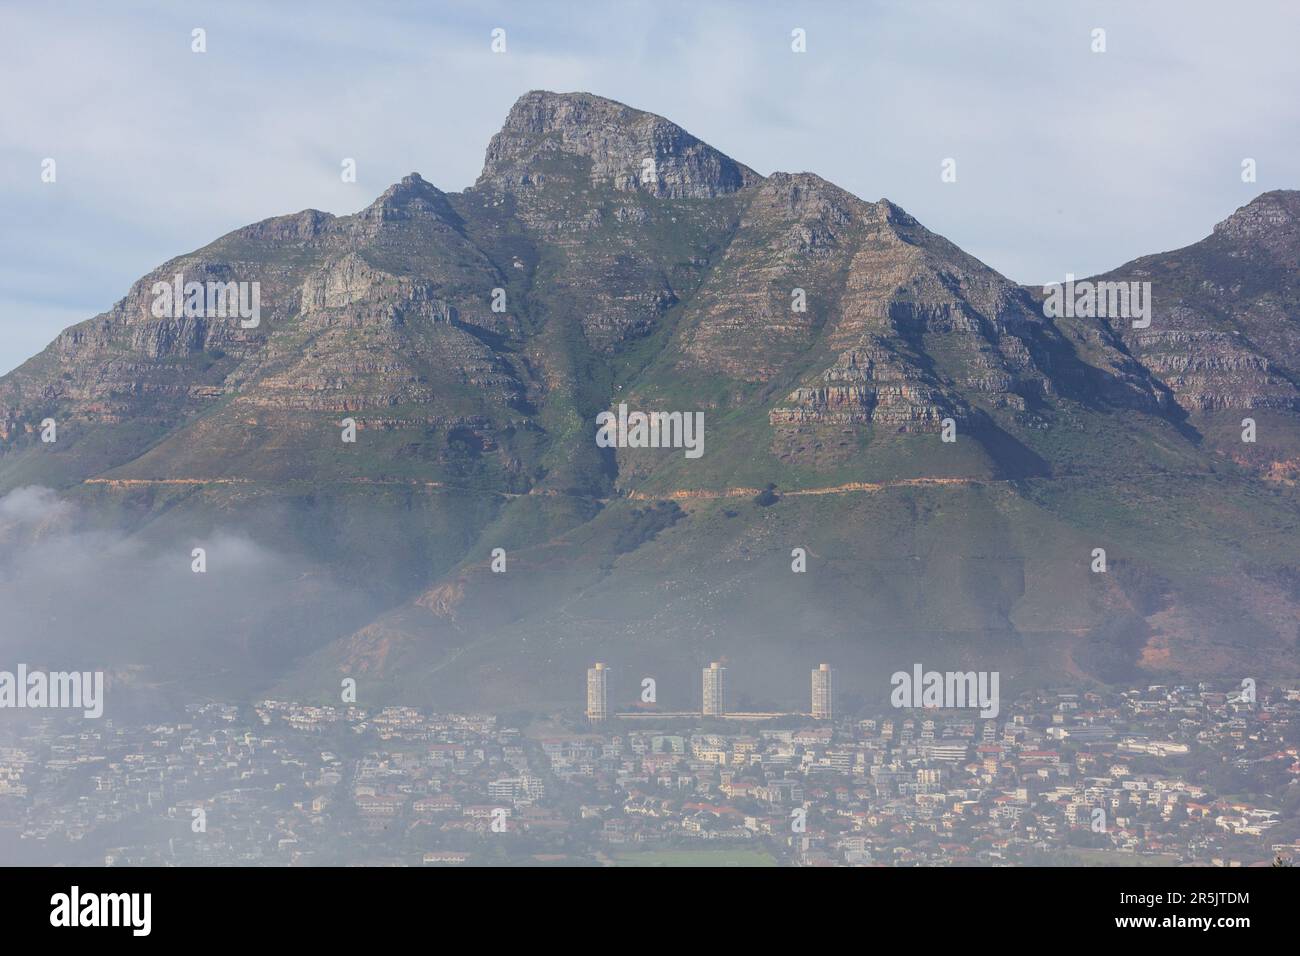 Devils Peak et DISA Park photographiés en mai, Cape Town Afrique du Sud. Banque D'Images